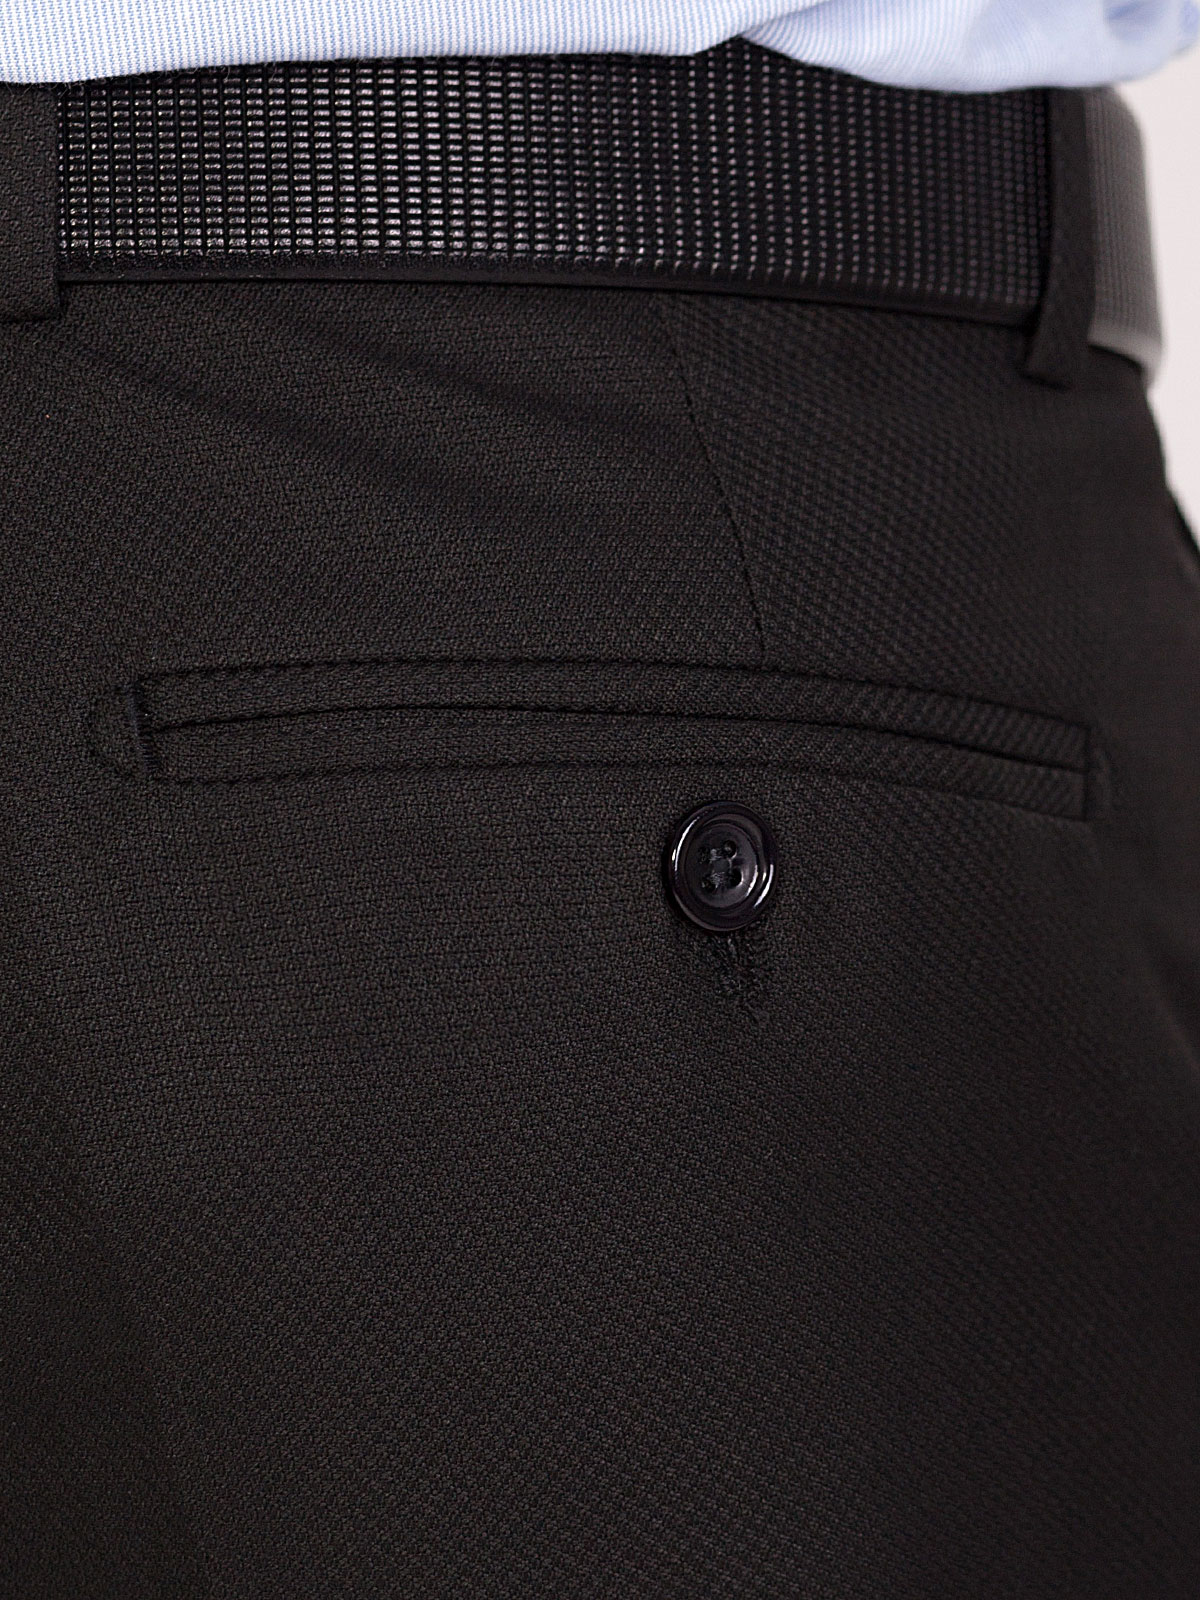 Pantaloni clasici în negru - 63241 € 24.75 img3